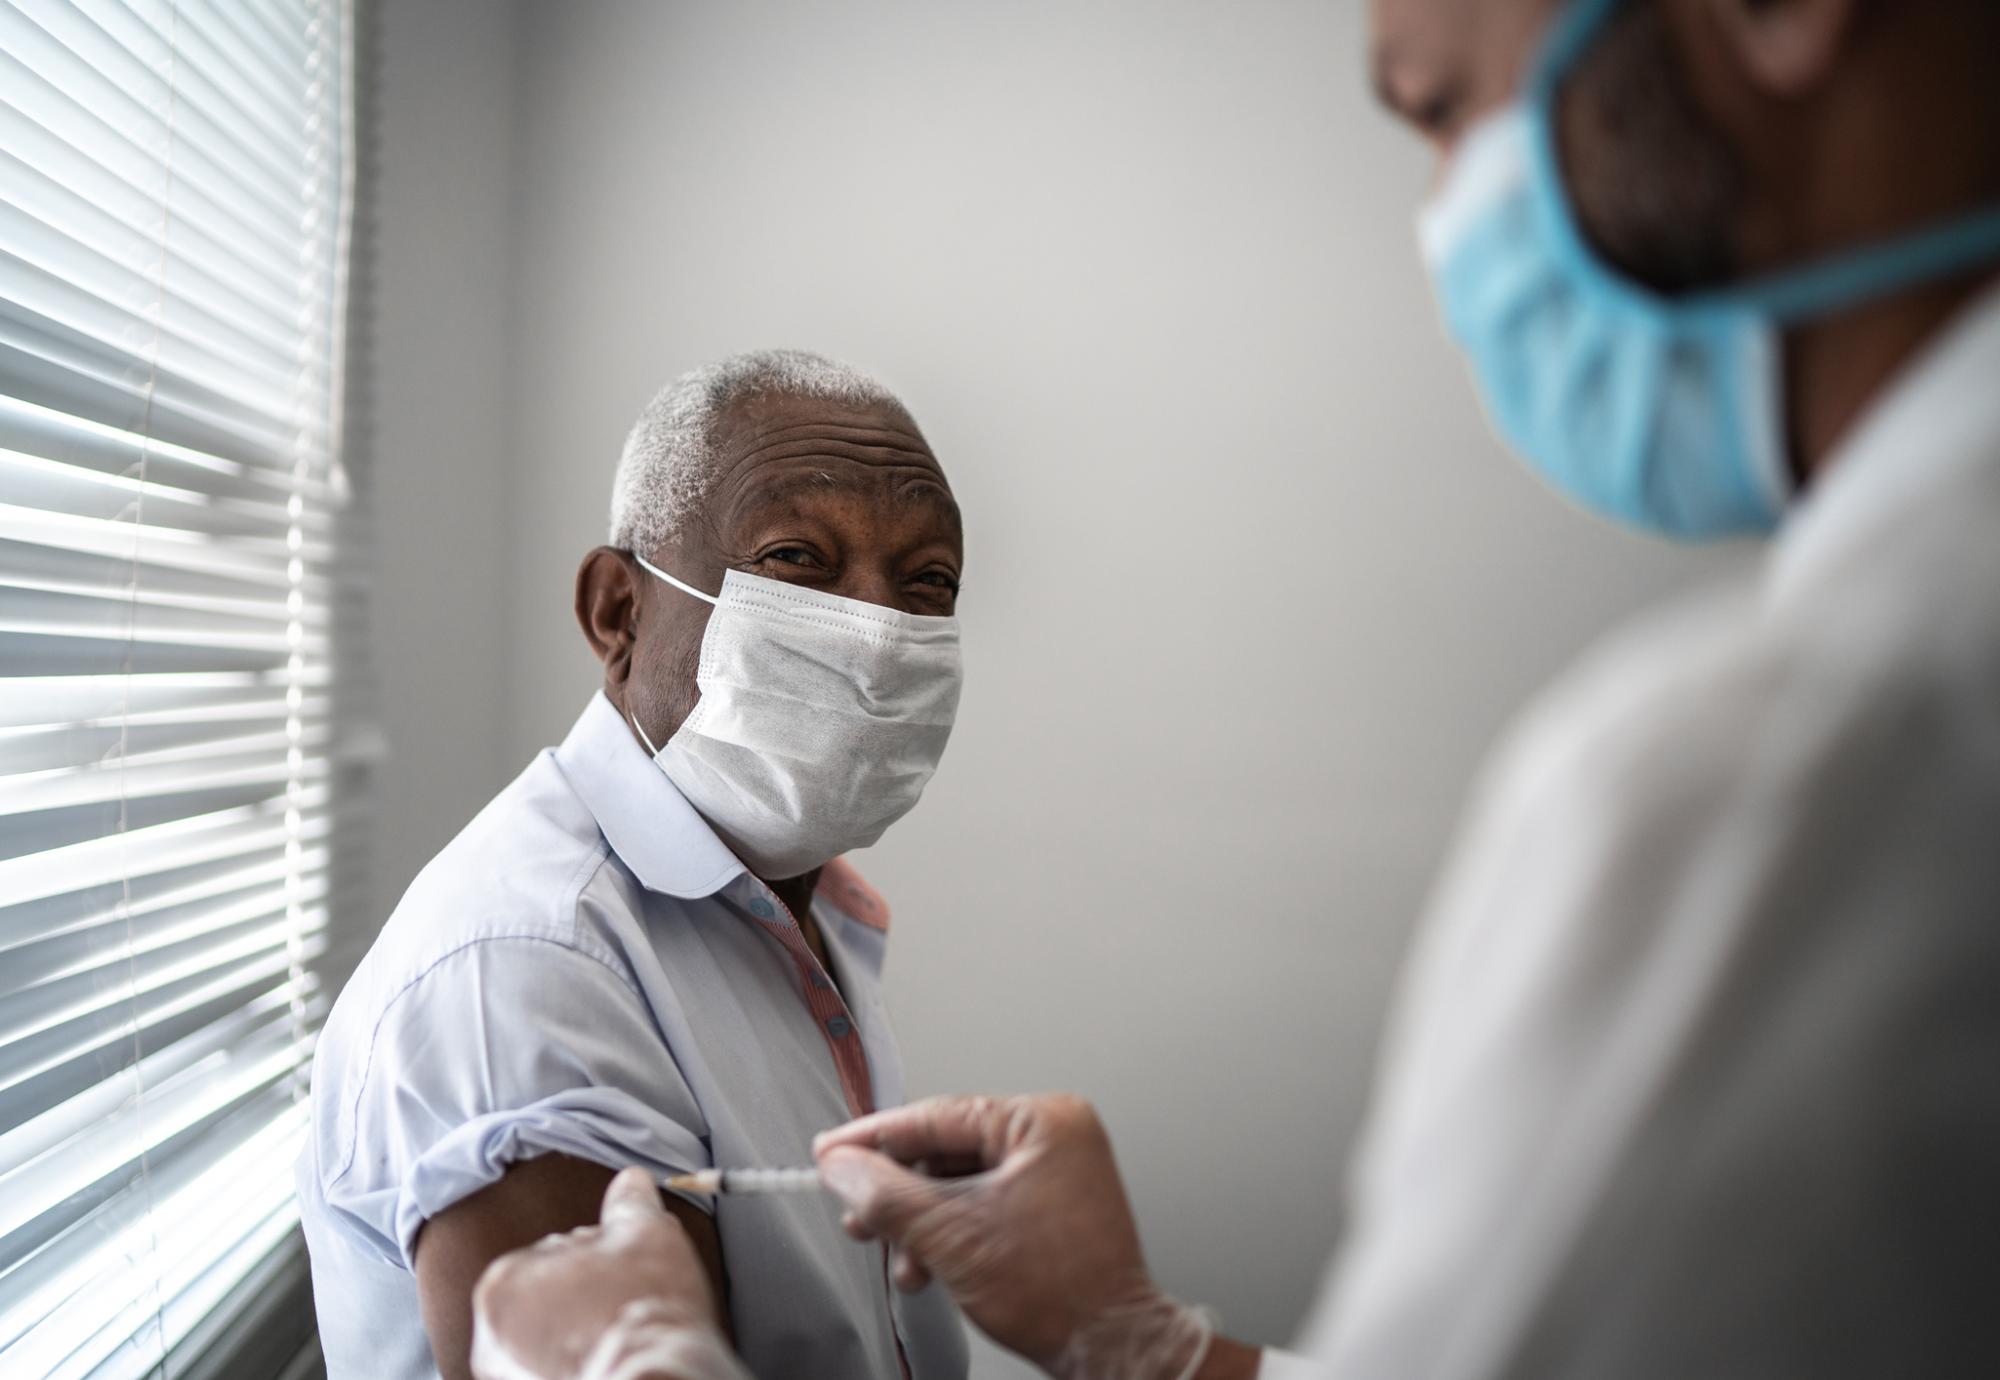 Elderly man receives a vaccine jab